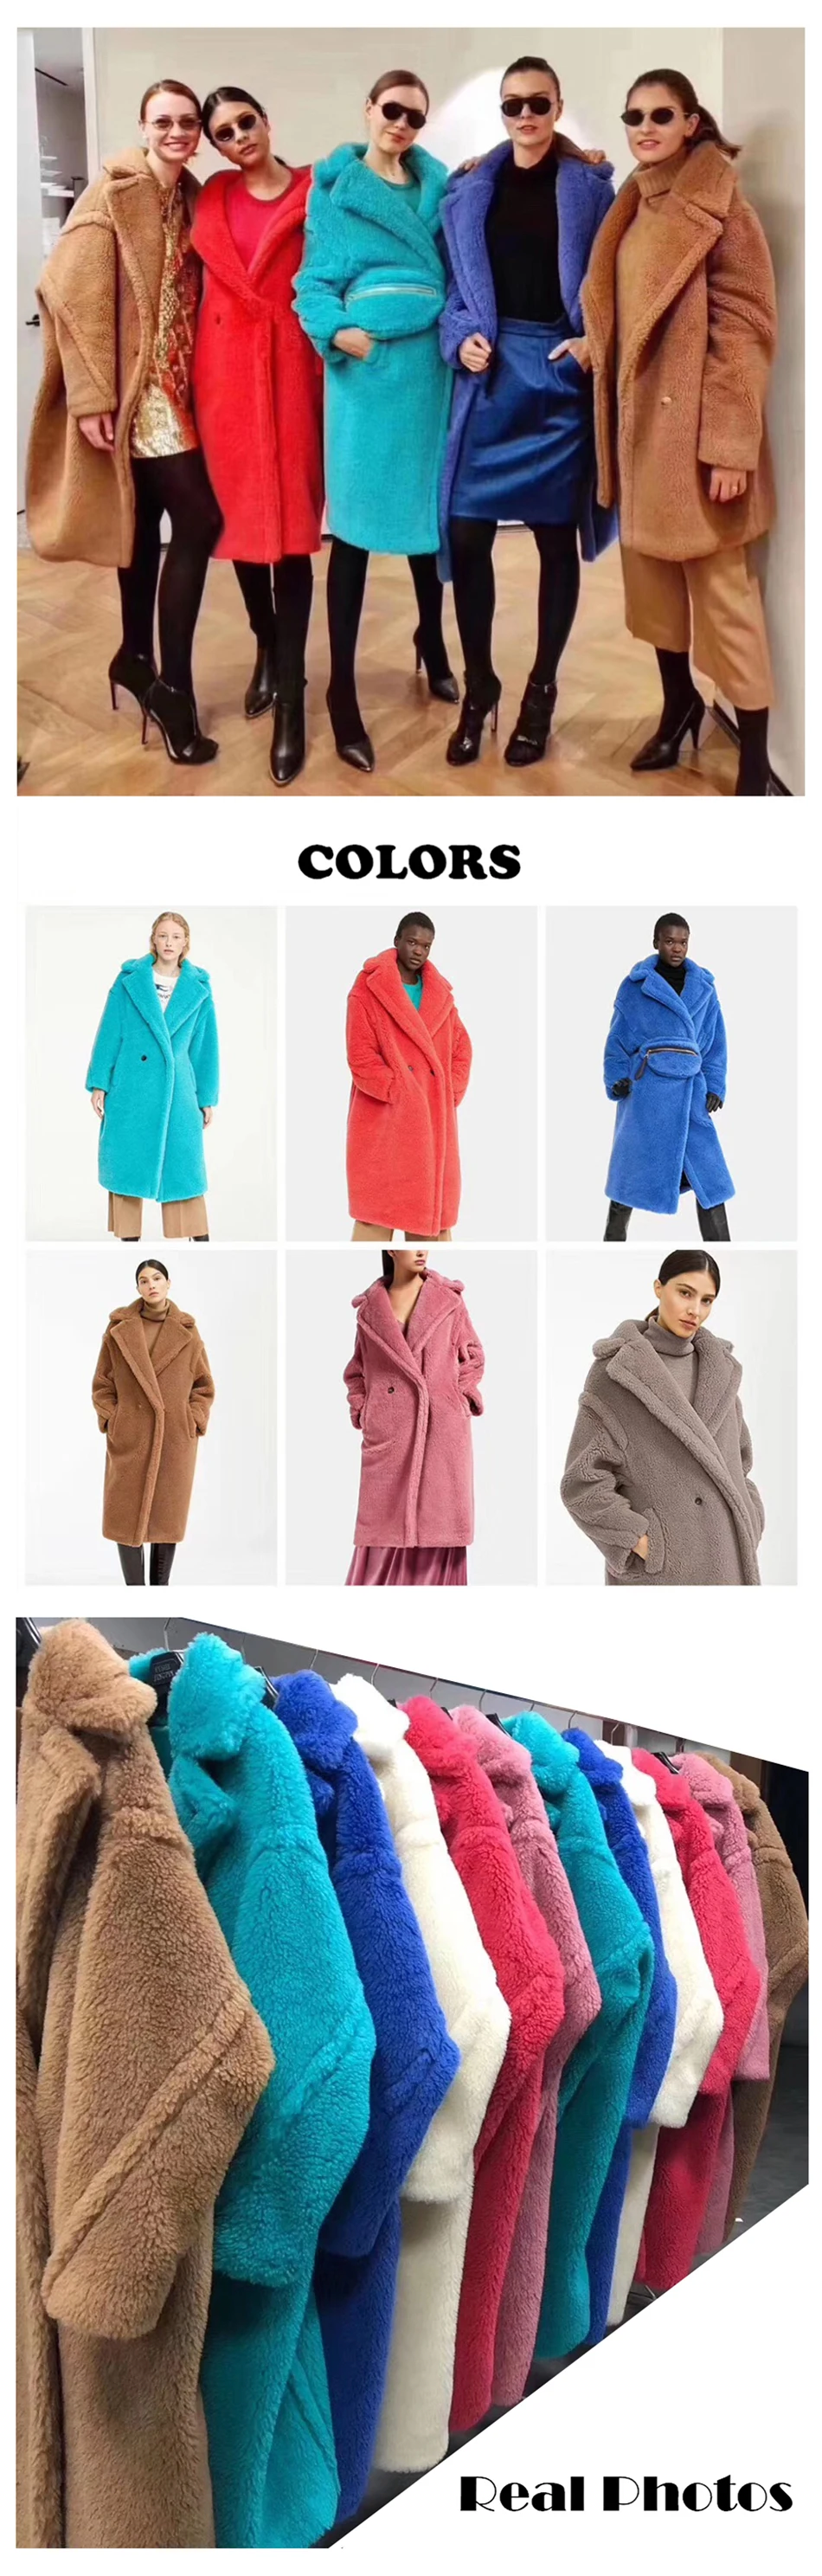 Зимнее Новое Женское пальто большого размера, шерстяное пальто верблюжьего цвета, Женский Теплый Блейзер, меховое пальто